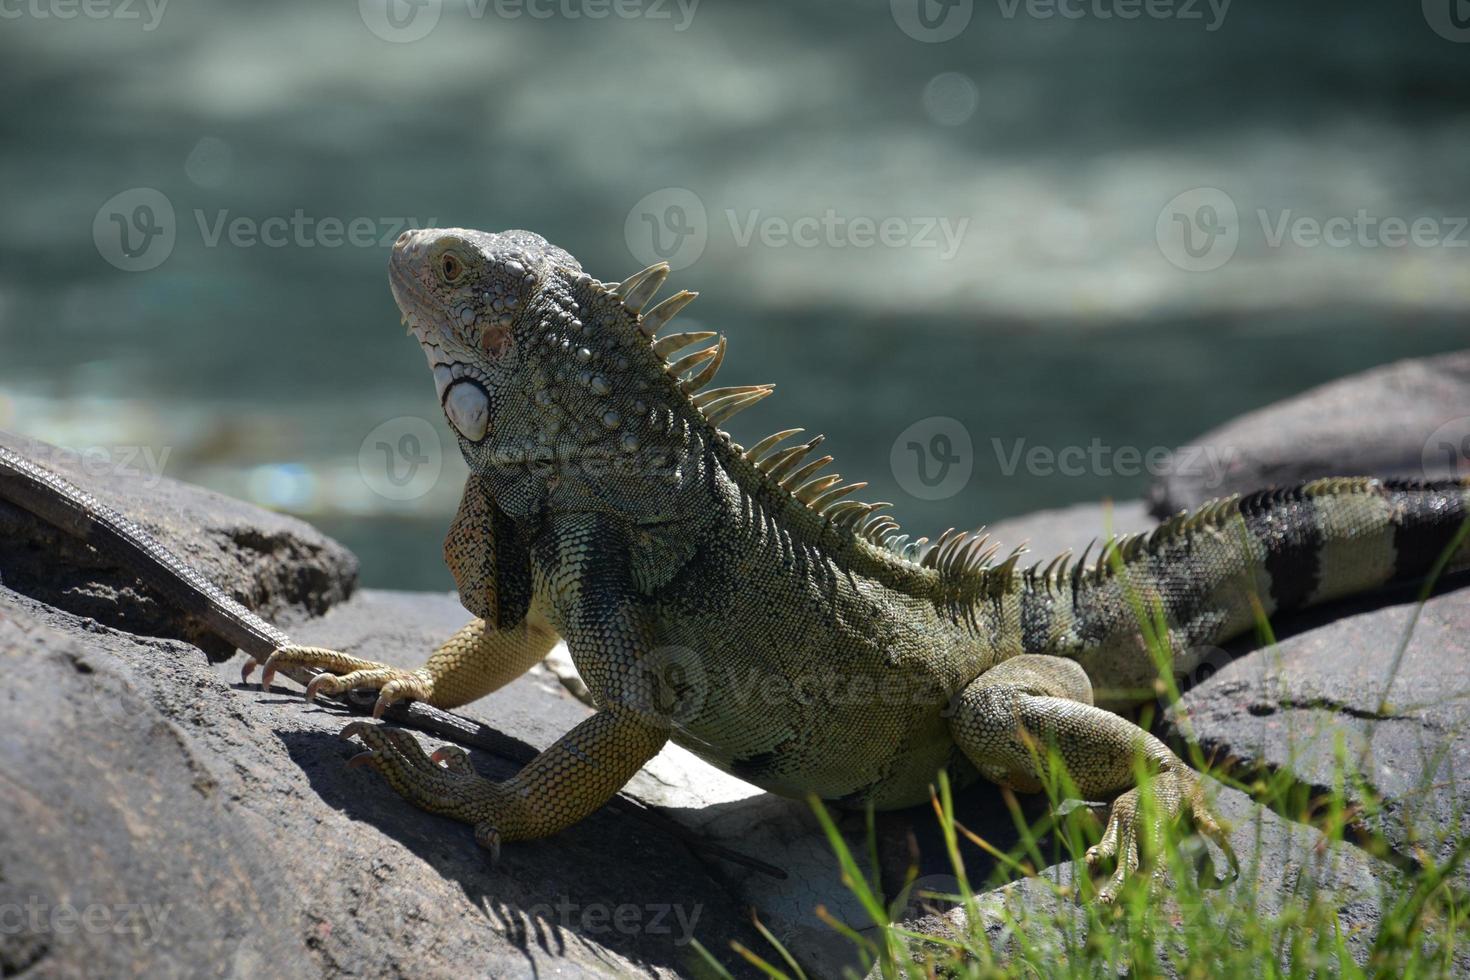 iguana con dedos largos y uñas en una roca foto